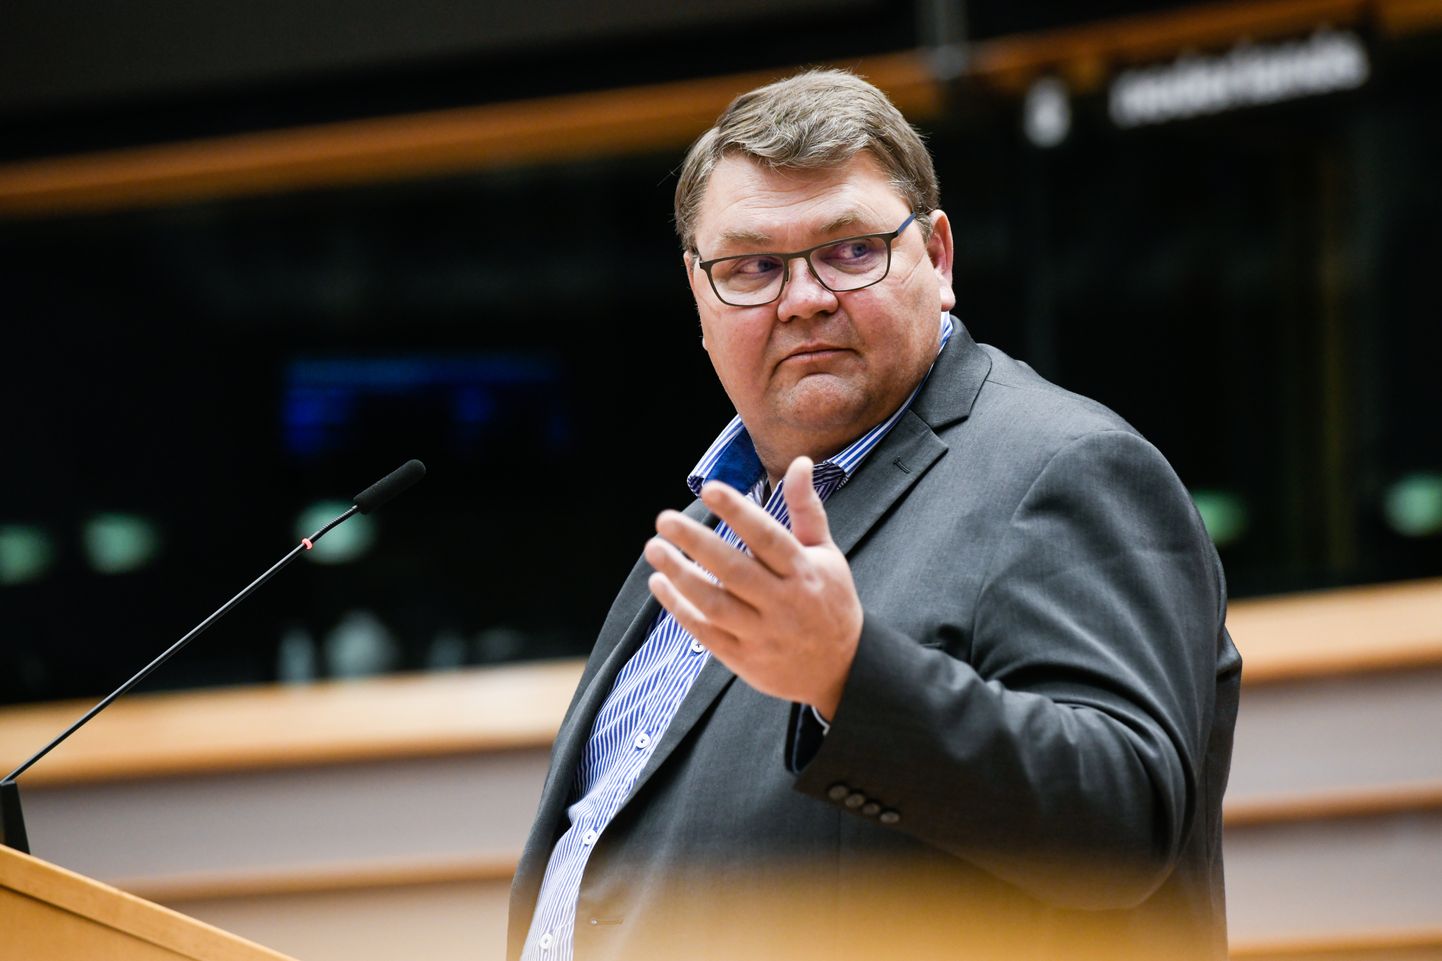 Rootsi Demokraatide ridadesse kuuluv eurosaadik Peter Lundgren Euroopa Parlamendi istungil kõnelemas.